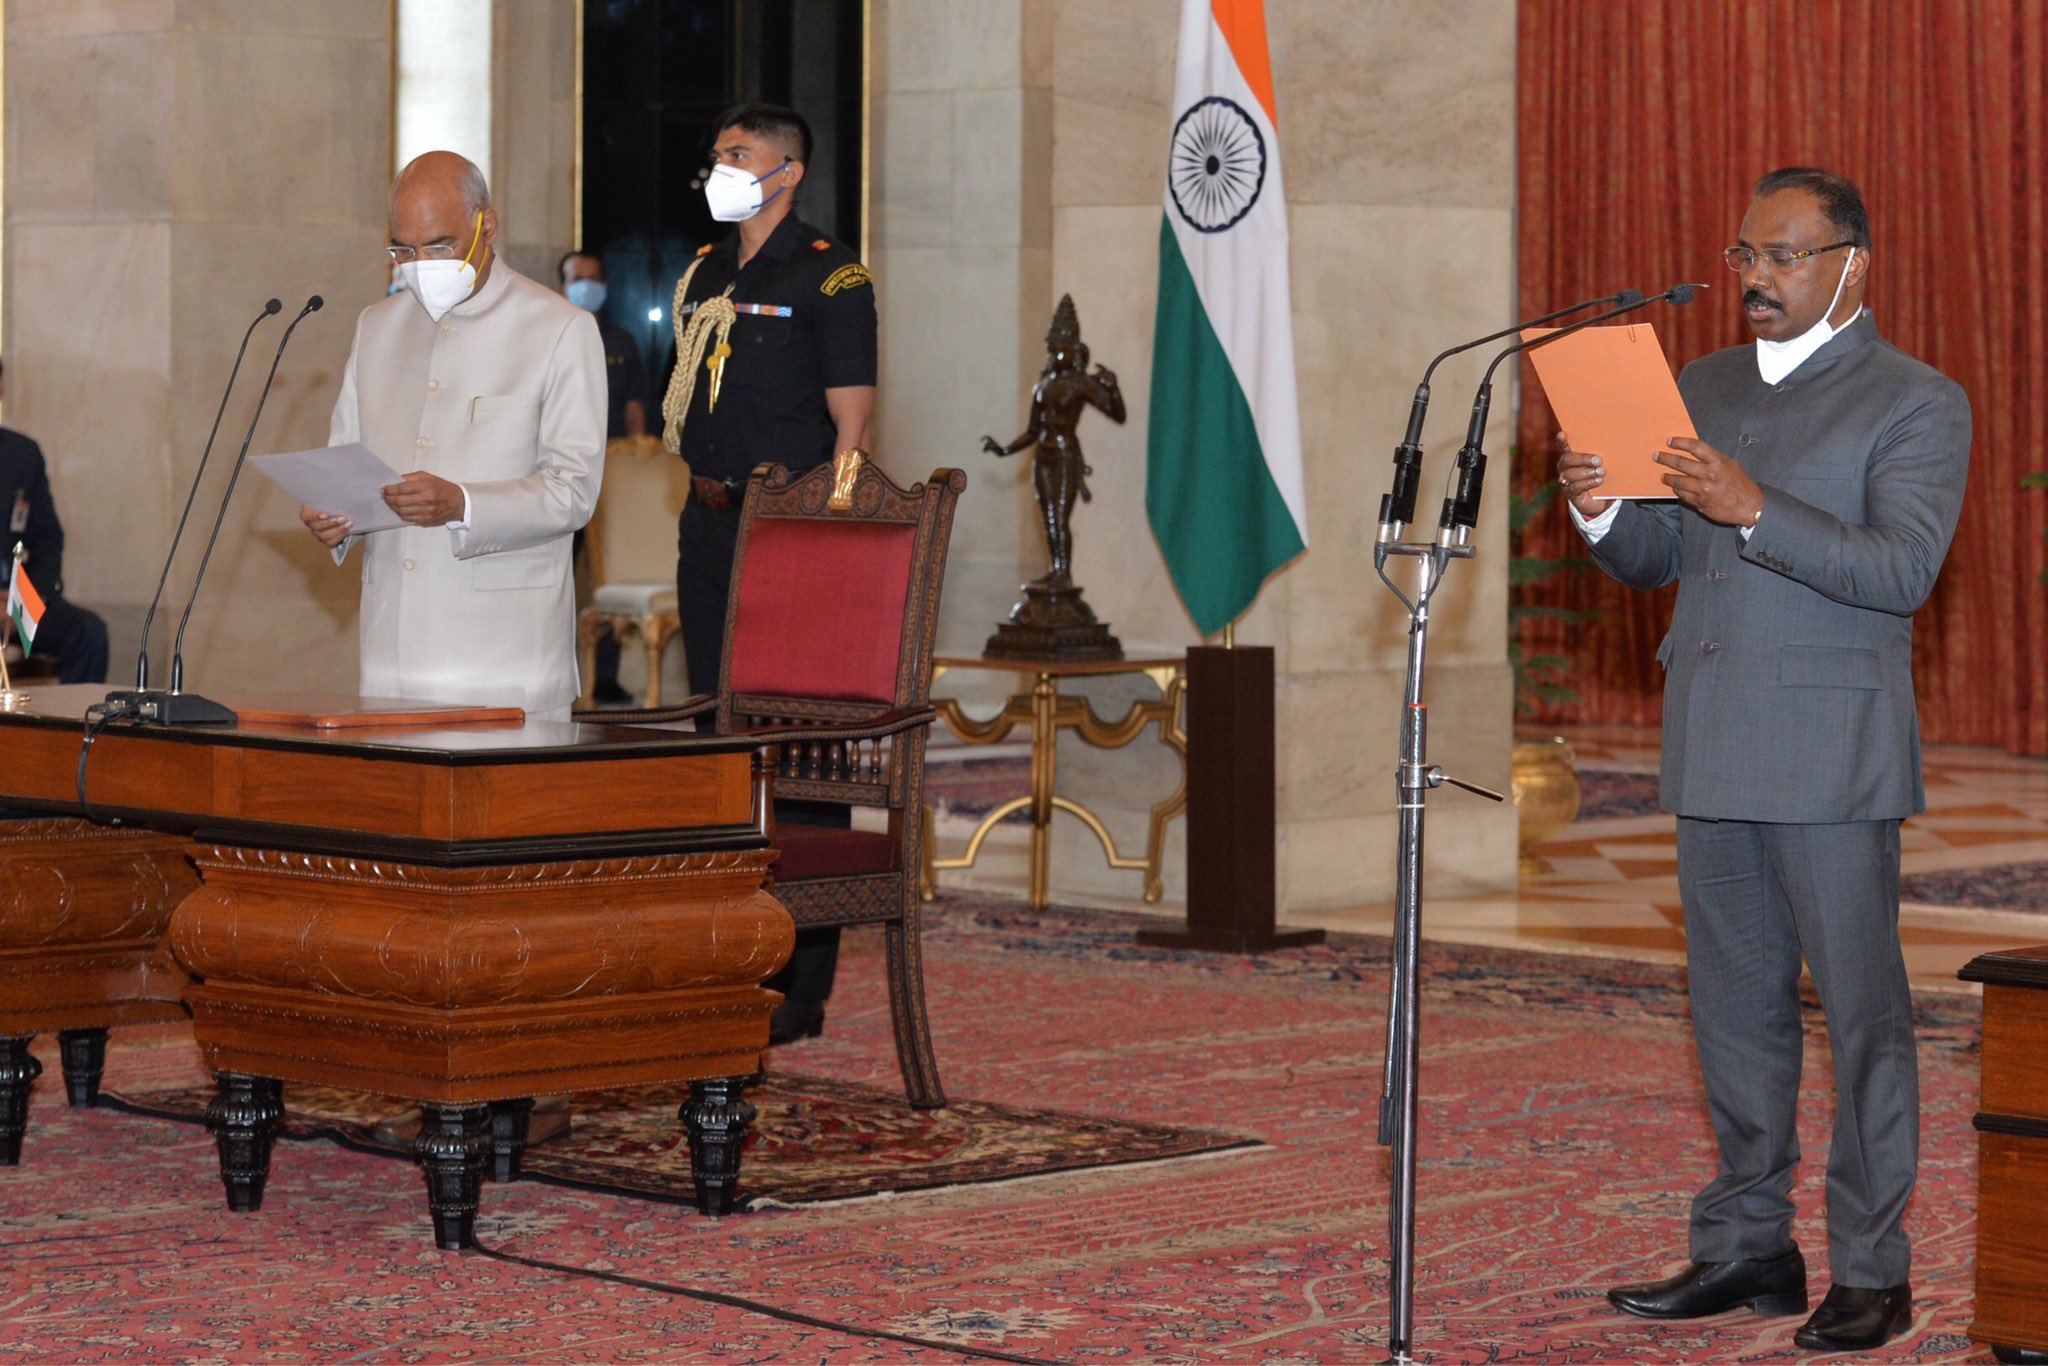 Shri Girish Chandra Murmu sworn in as the Comptroller and Auditor General of India at Rashtrapati Bhavan.